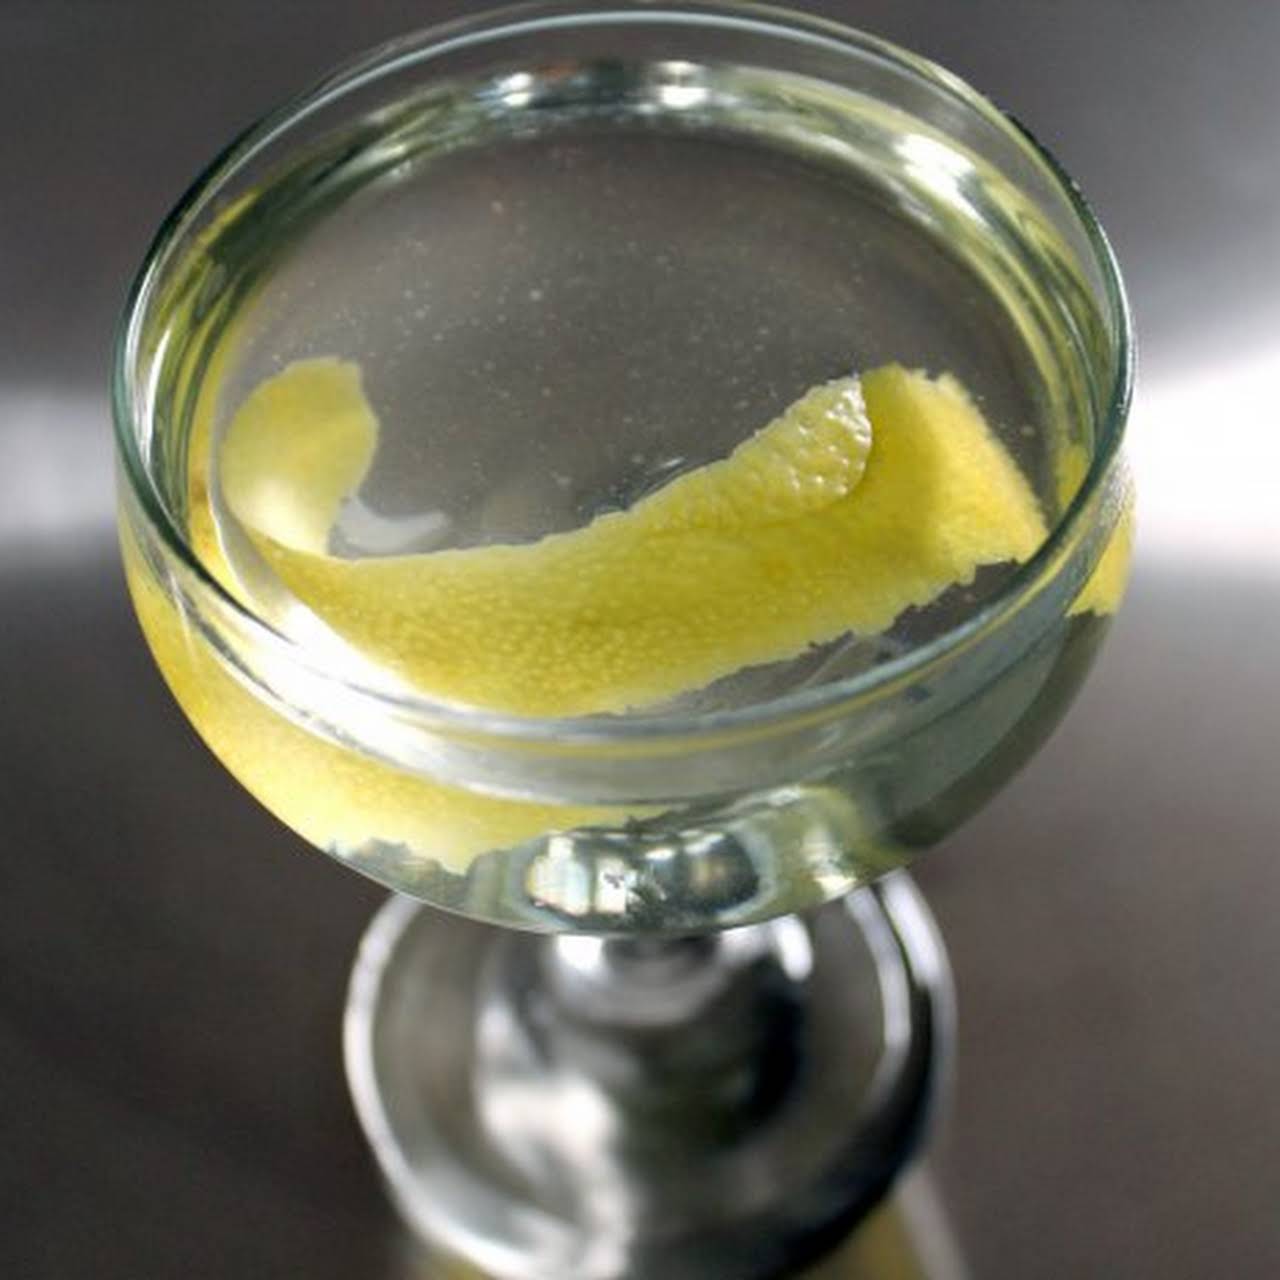 The Tuxedo (No. 2) Cocktail